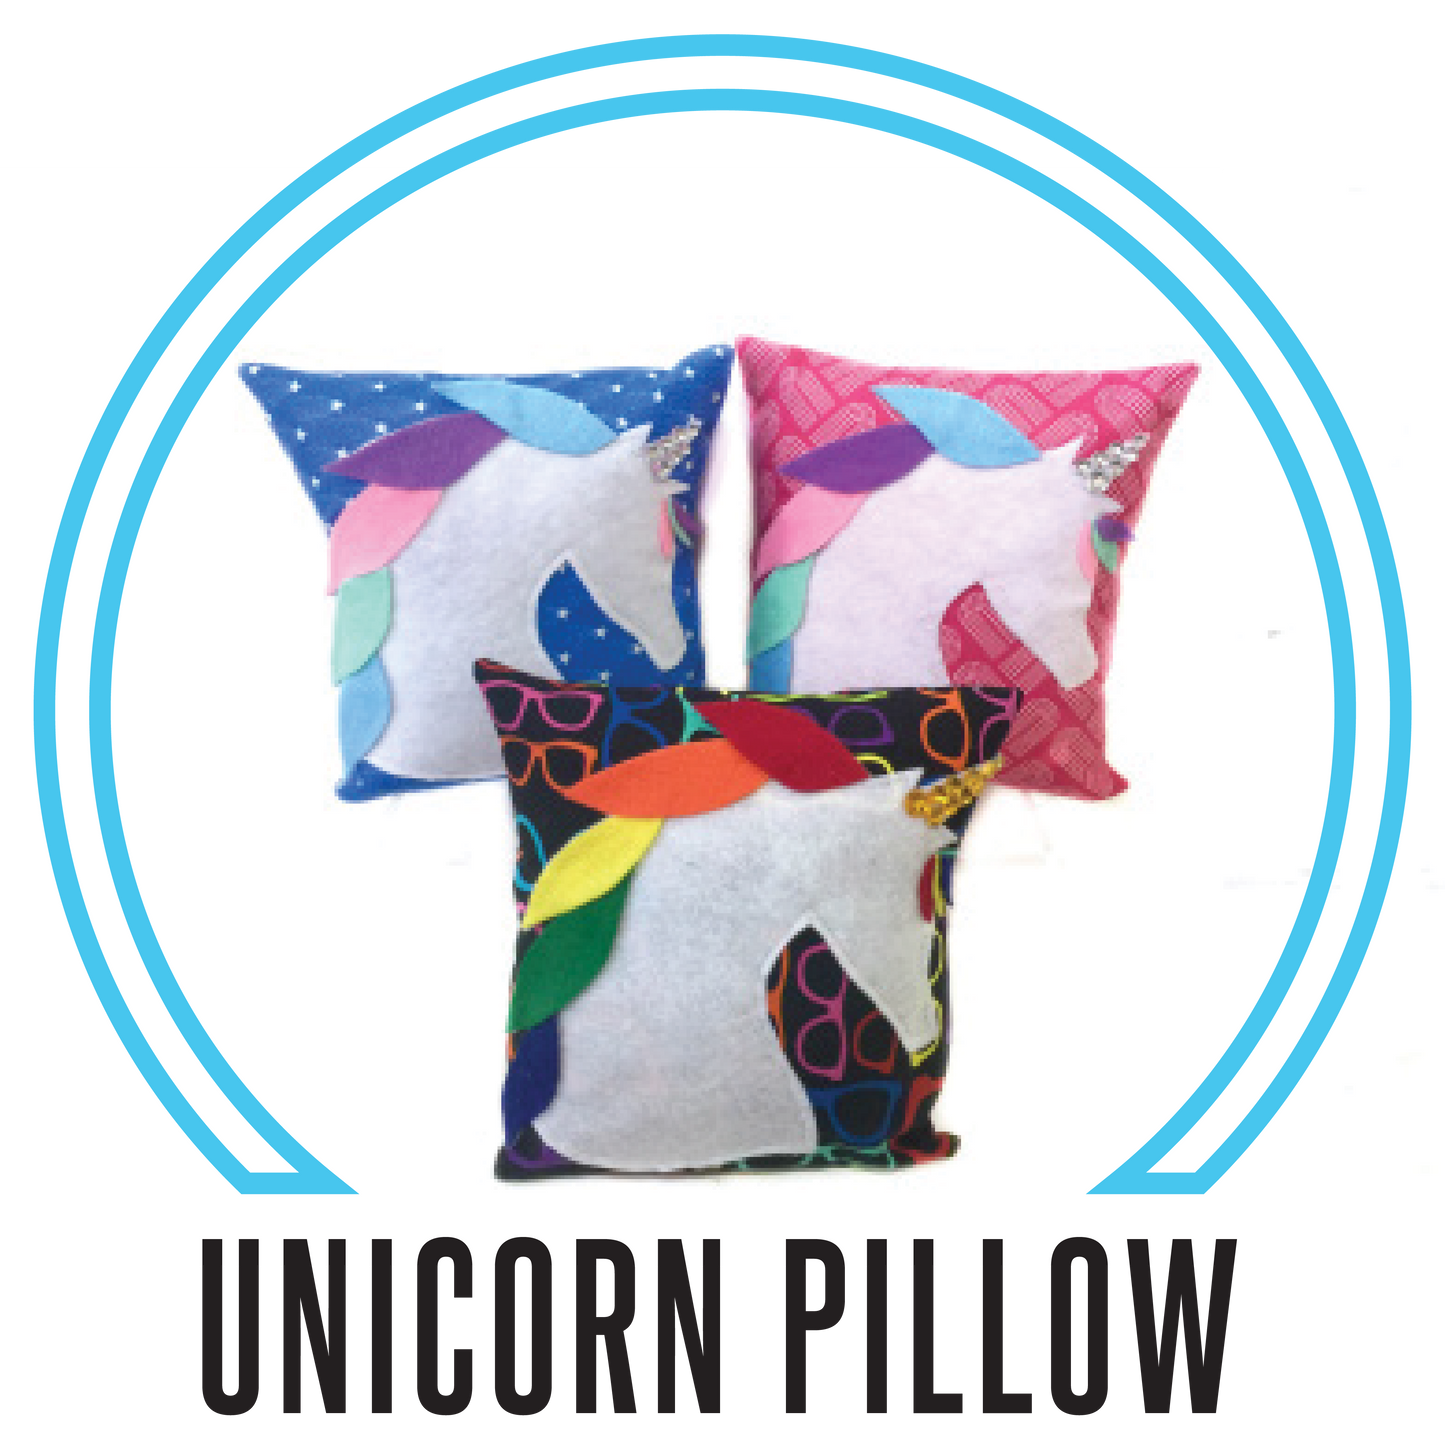 Fashionable Funday: Unicorn Pillow, Mon- Fri, May 13-17, 3:30pm-5:30pm